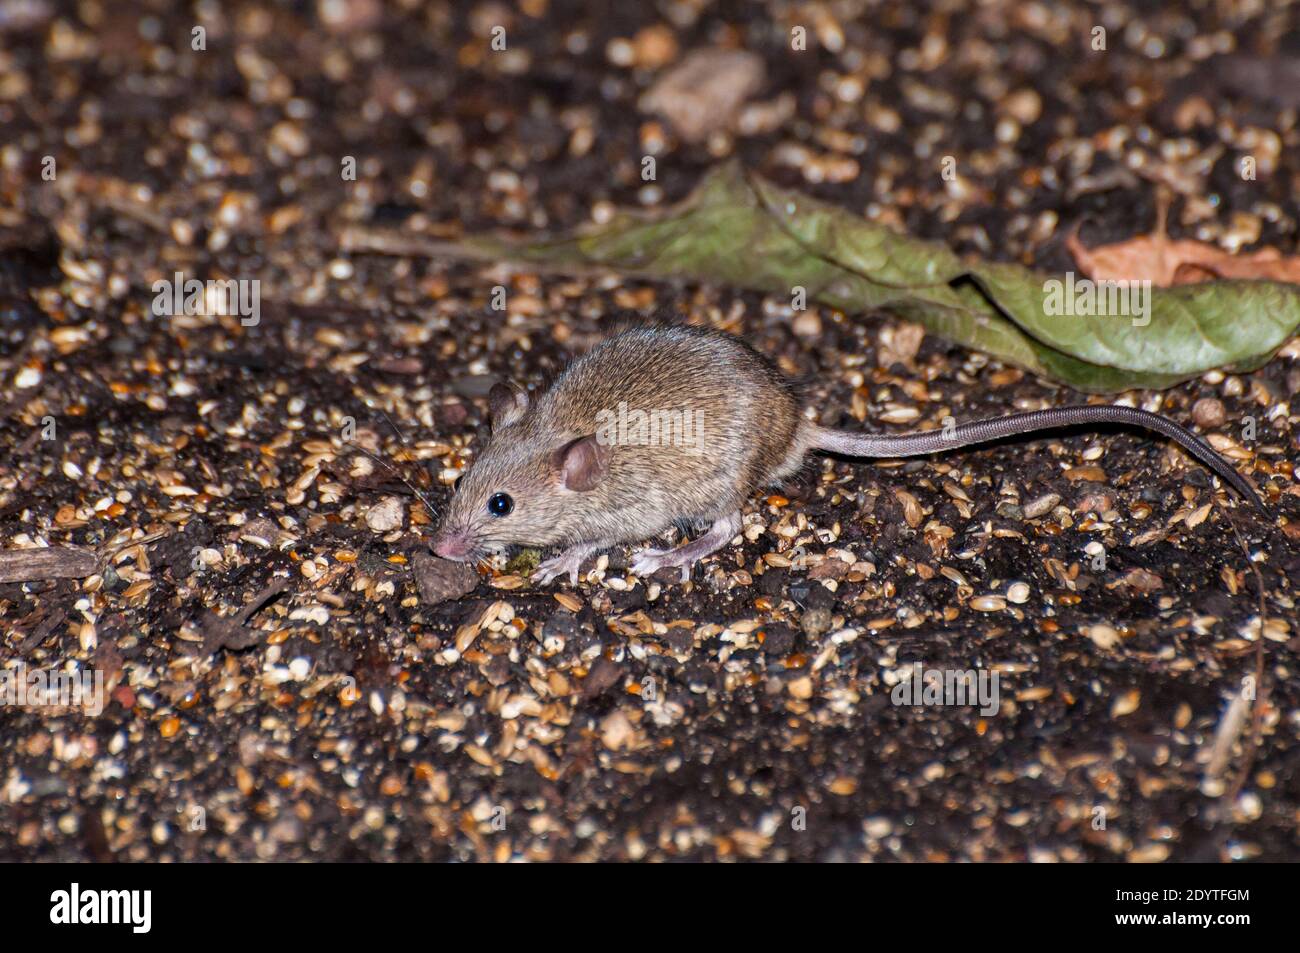 St. Paul, Minnesota. Mouse della casa; Mus musculus alla ricerca di cibo mentre corre libero sul terreno. Foto Stock